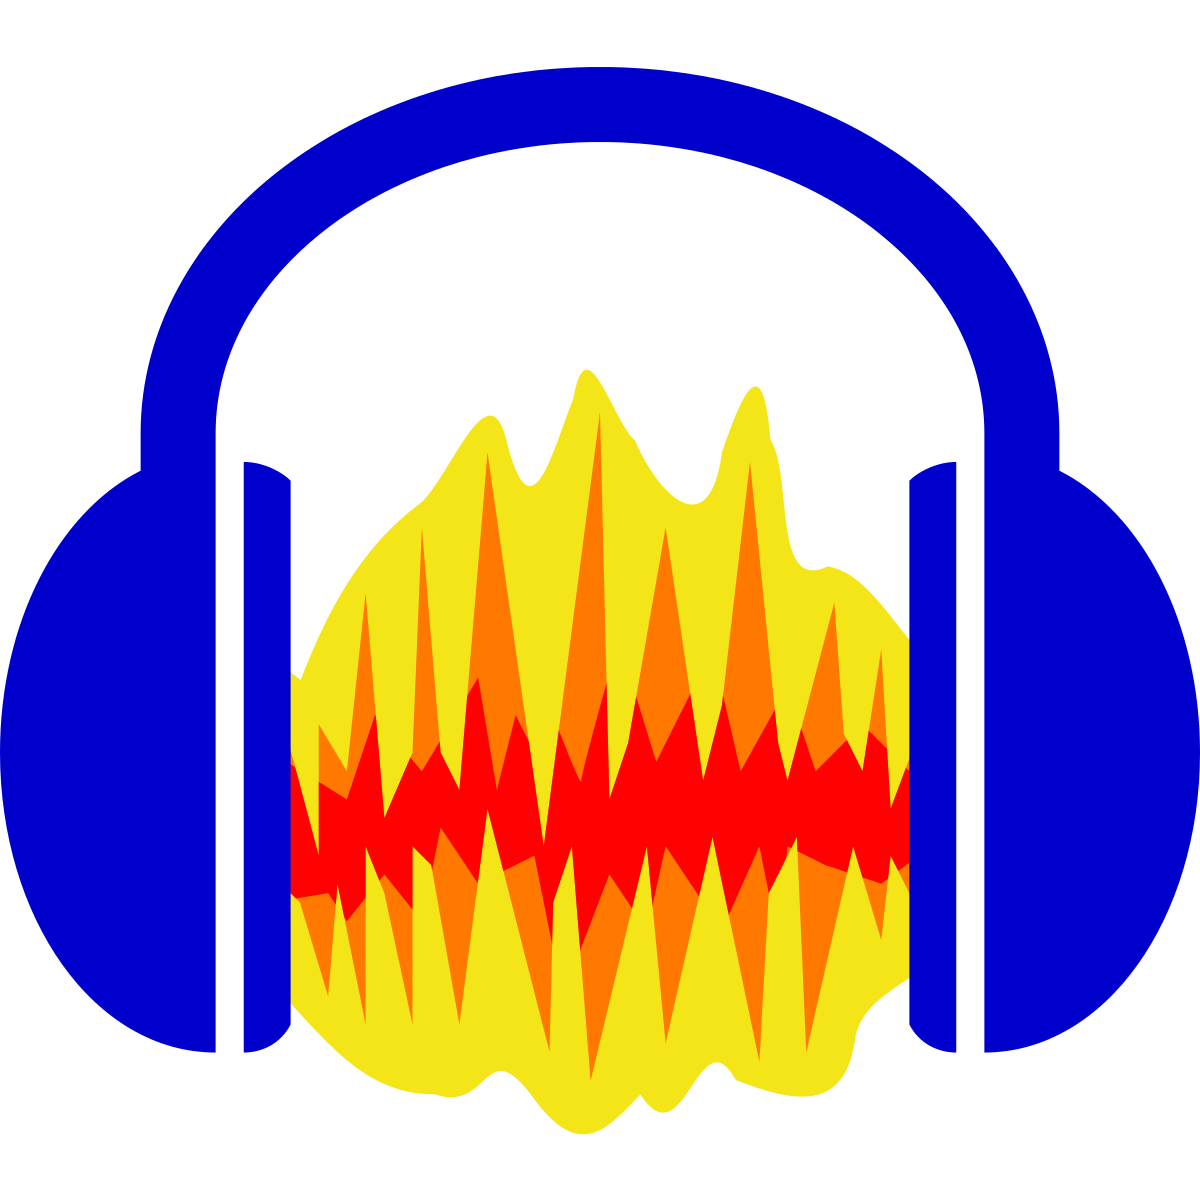 Бесплатный, простой и удобный в использовании аудиоредактор с множеством полезных функций и инструментов для работы с аудиофайлами популярных форматов